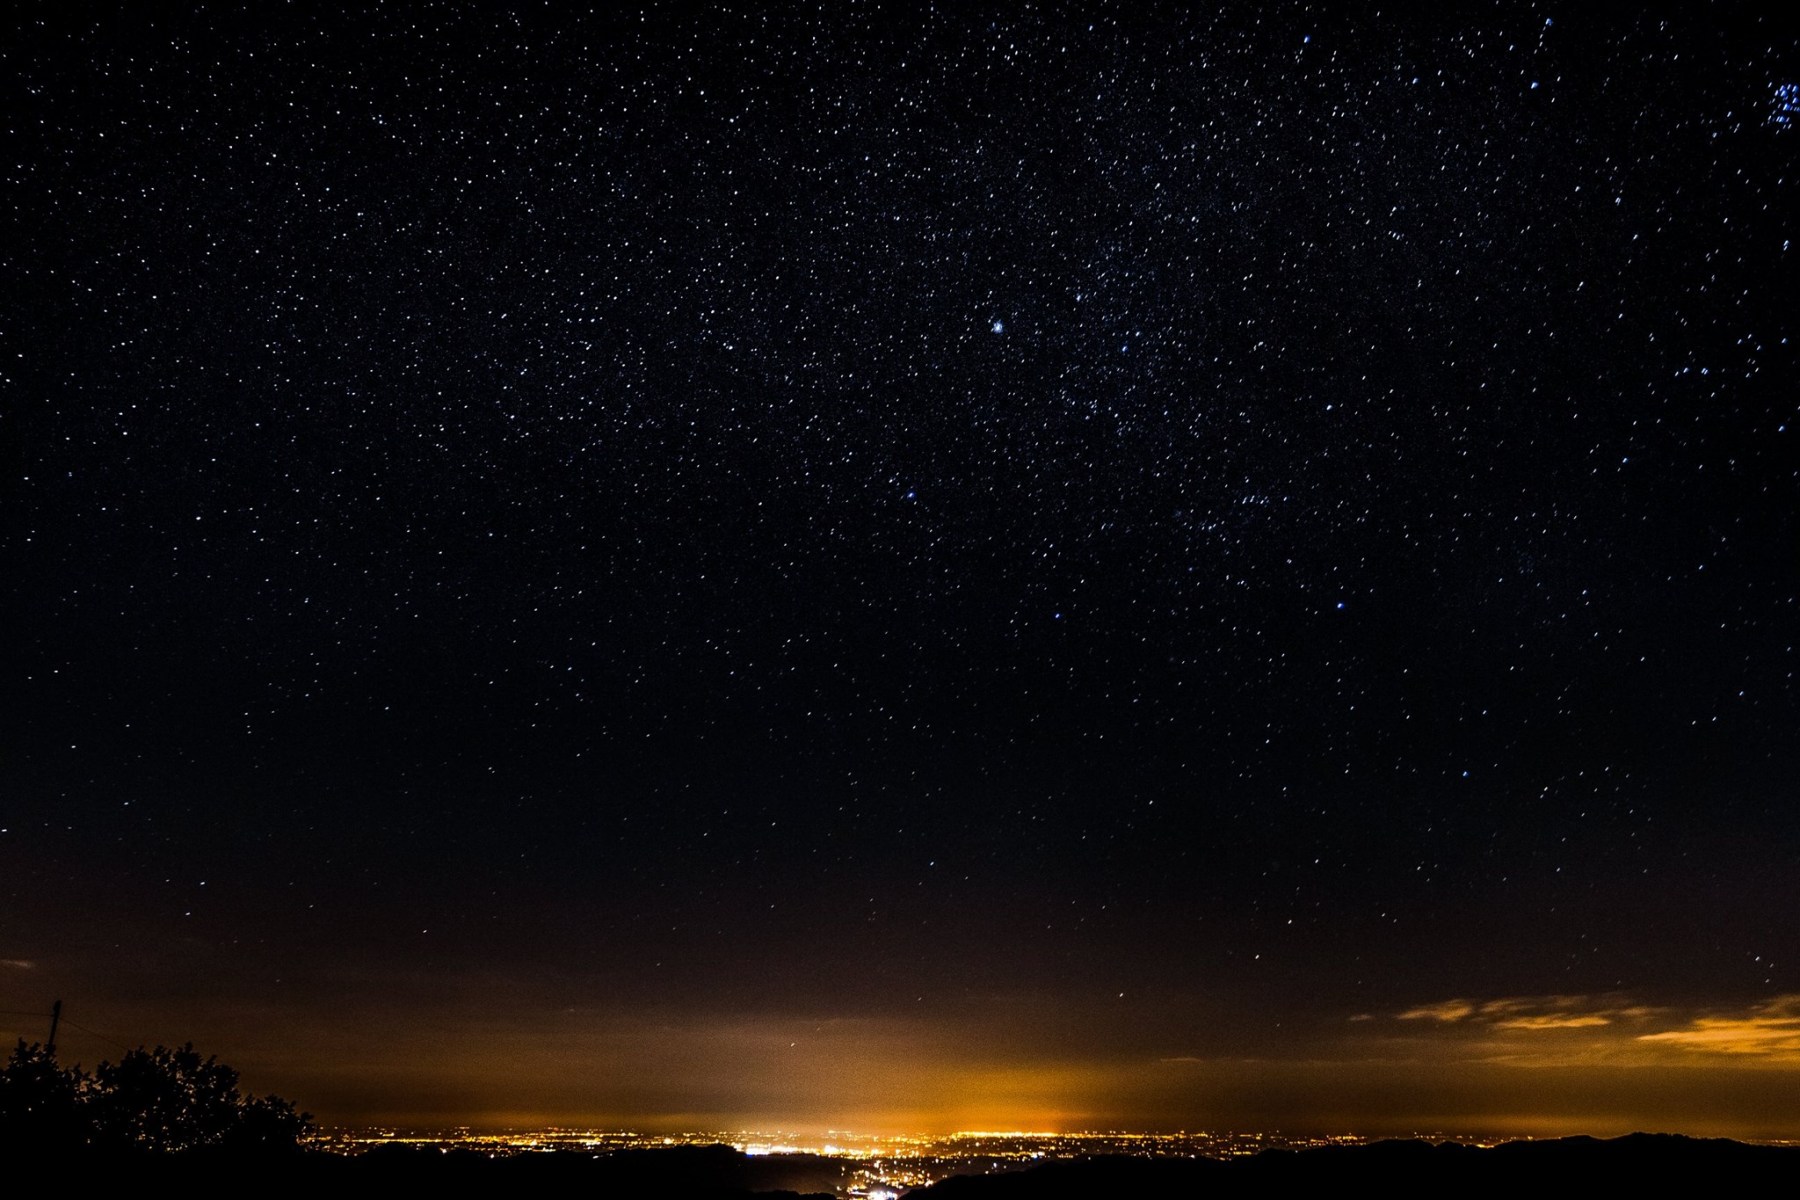 Panorama stellare e di pianura, tutto dall'osservatorio astronomico di Monteromano! Foto di Matteo B